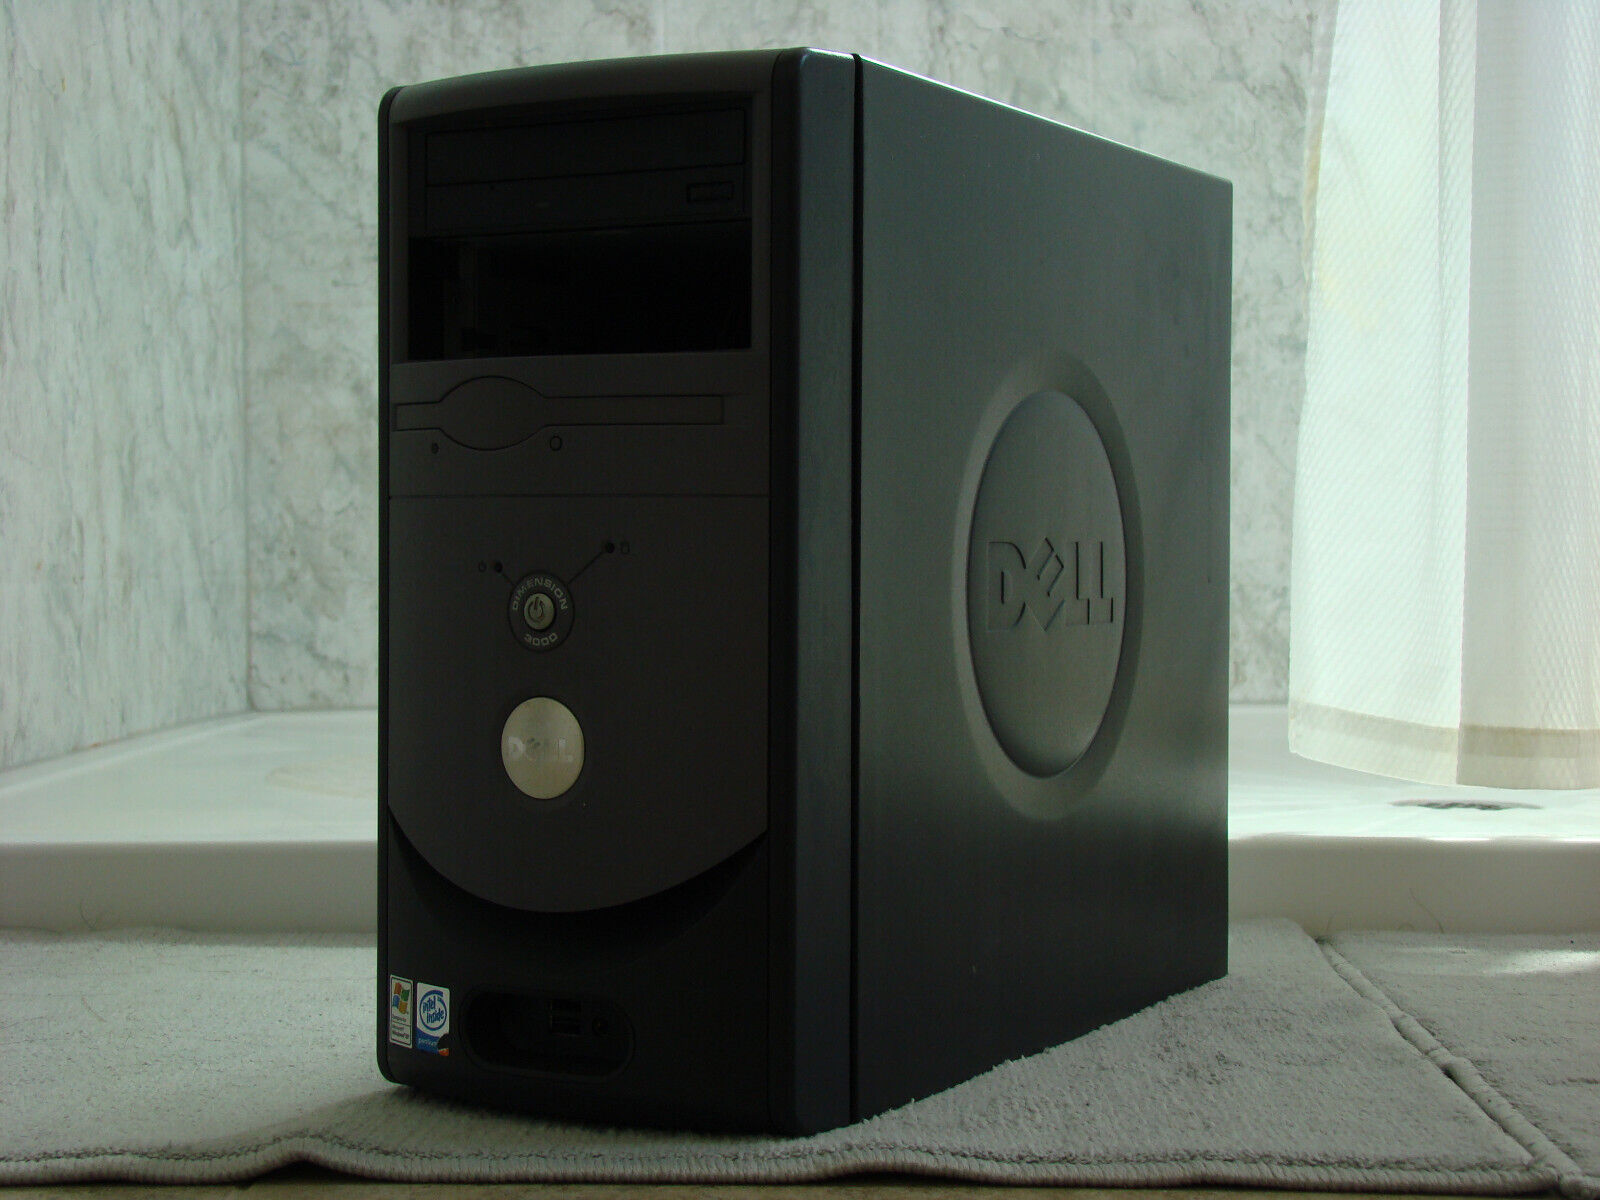 Dell Dimension 3000 - Intel Pentium 4 @ 2.8 GHz, 512MB DDR, 40GB hard drive